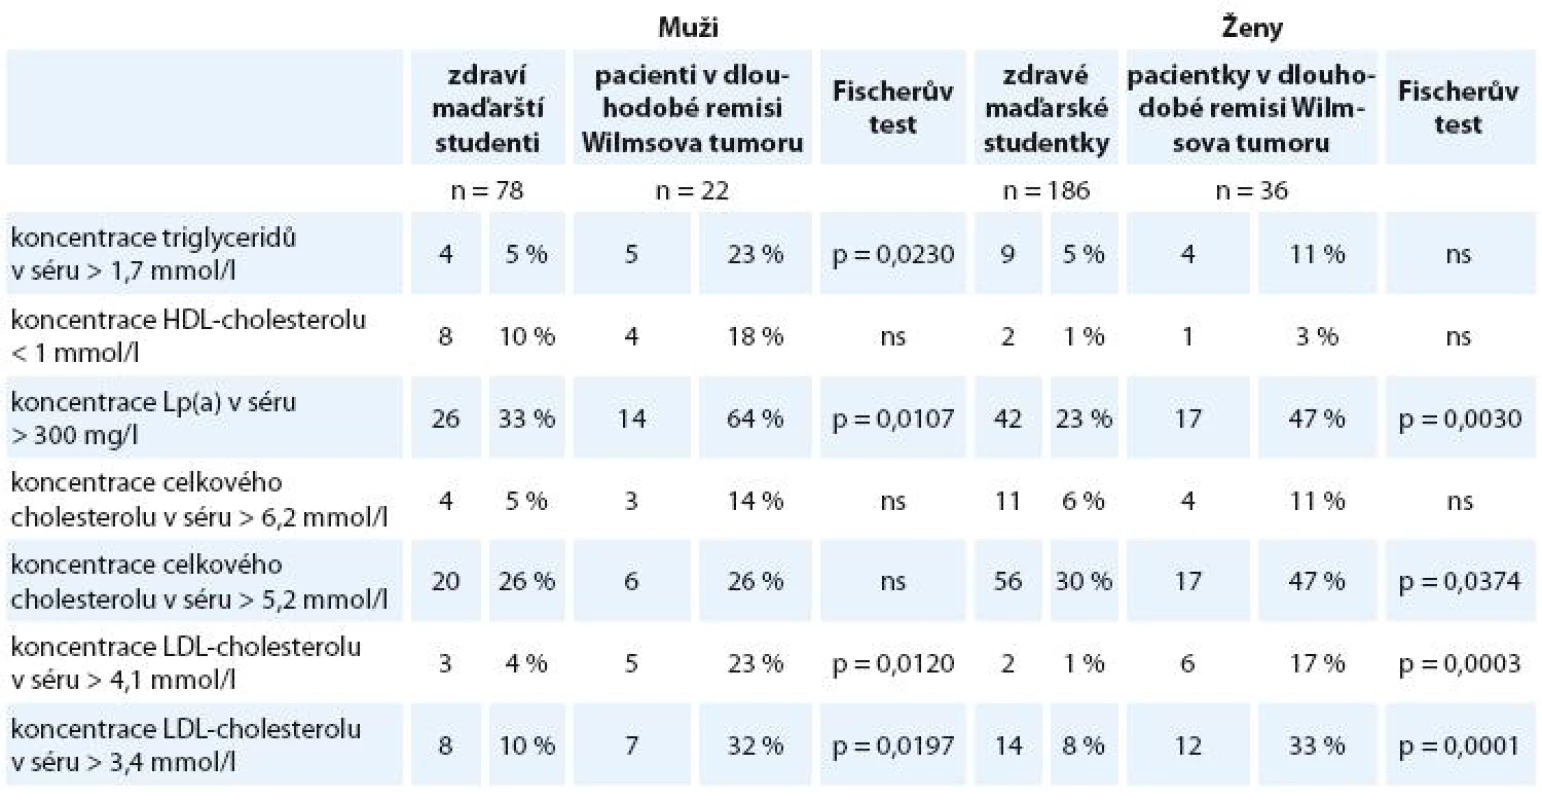 Porovnání prevalence patologických hodnot vybraných ukazatelů lipidového metabolizmu u pacientů našeho souboru a maďarských studentů.